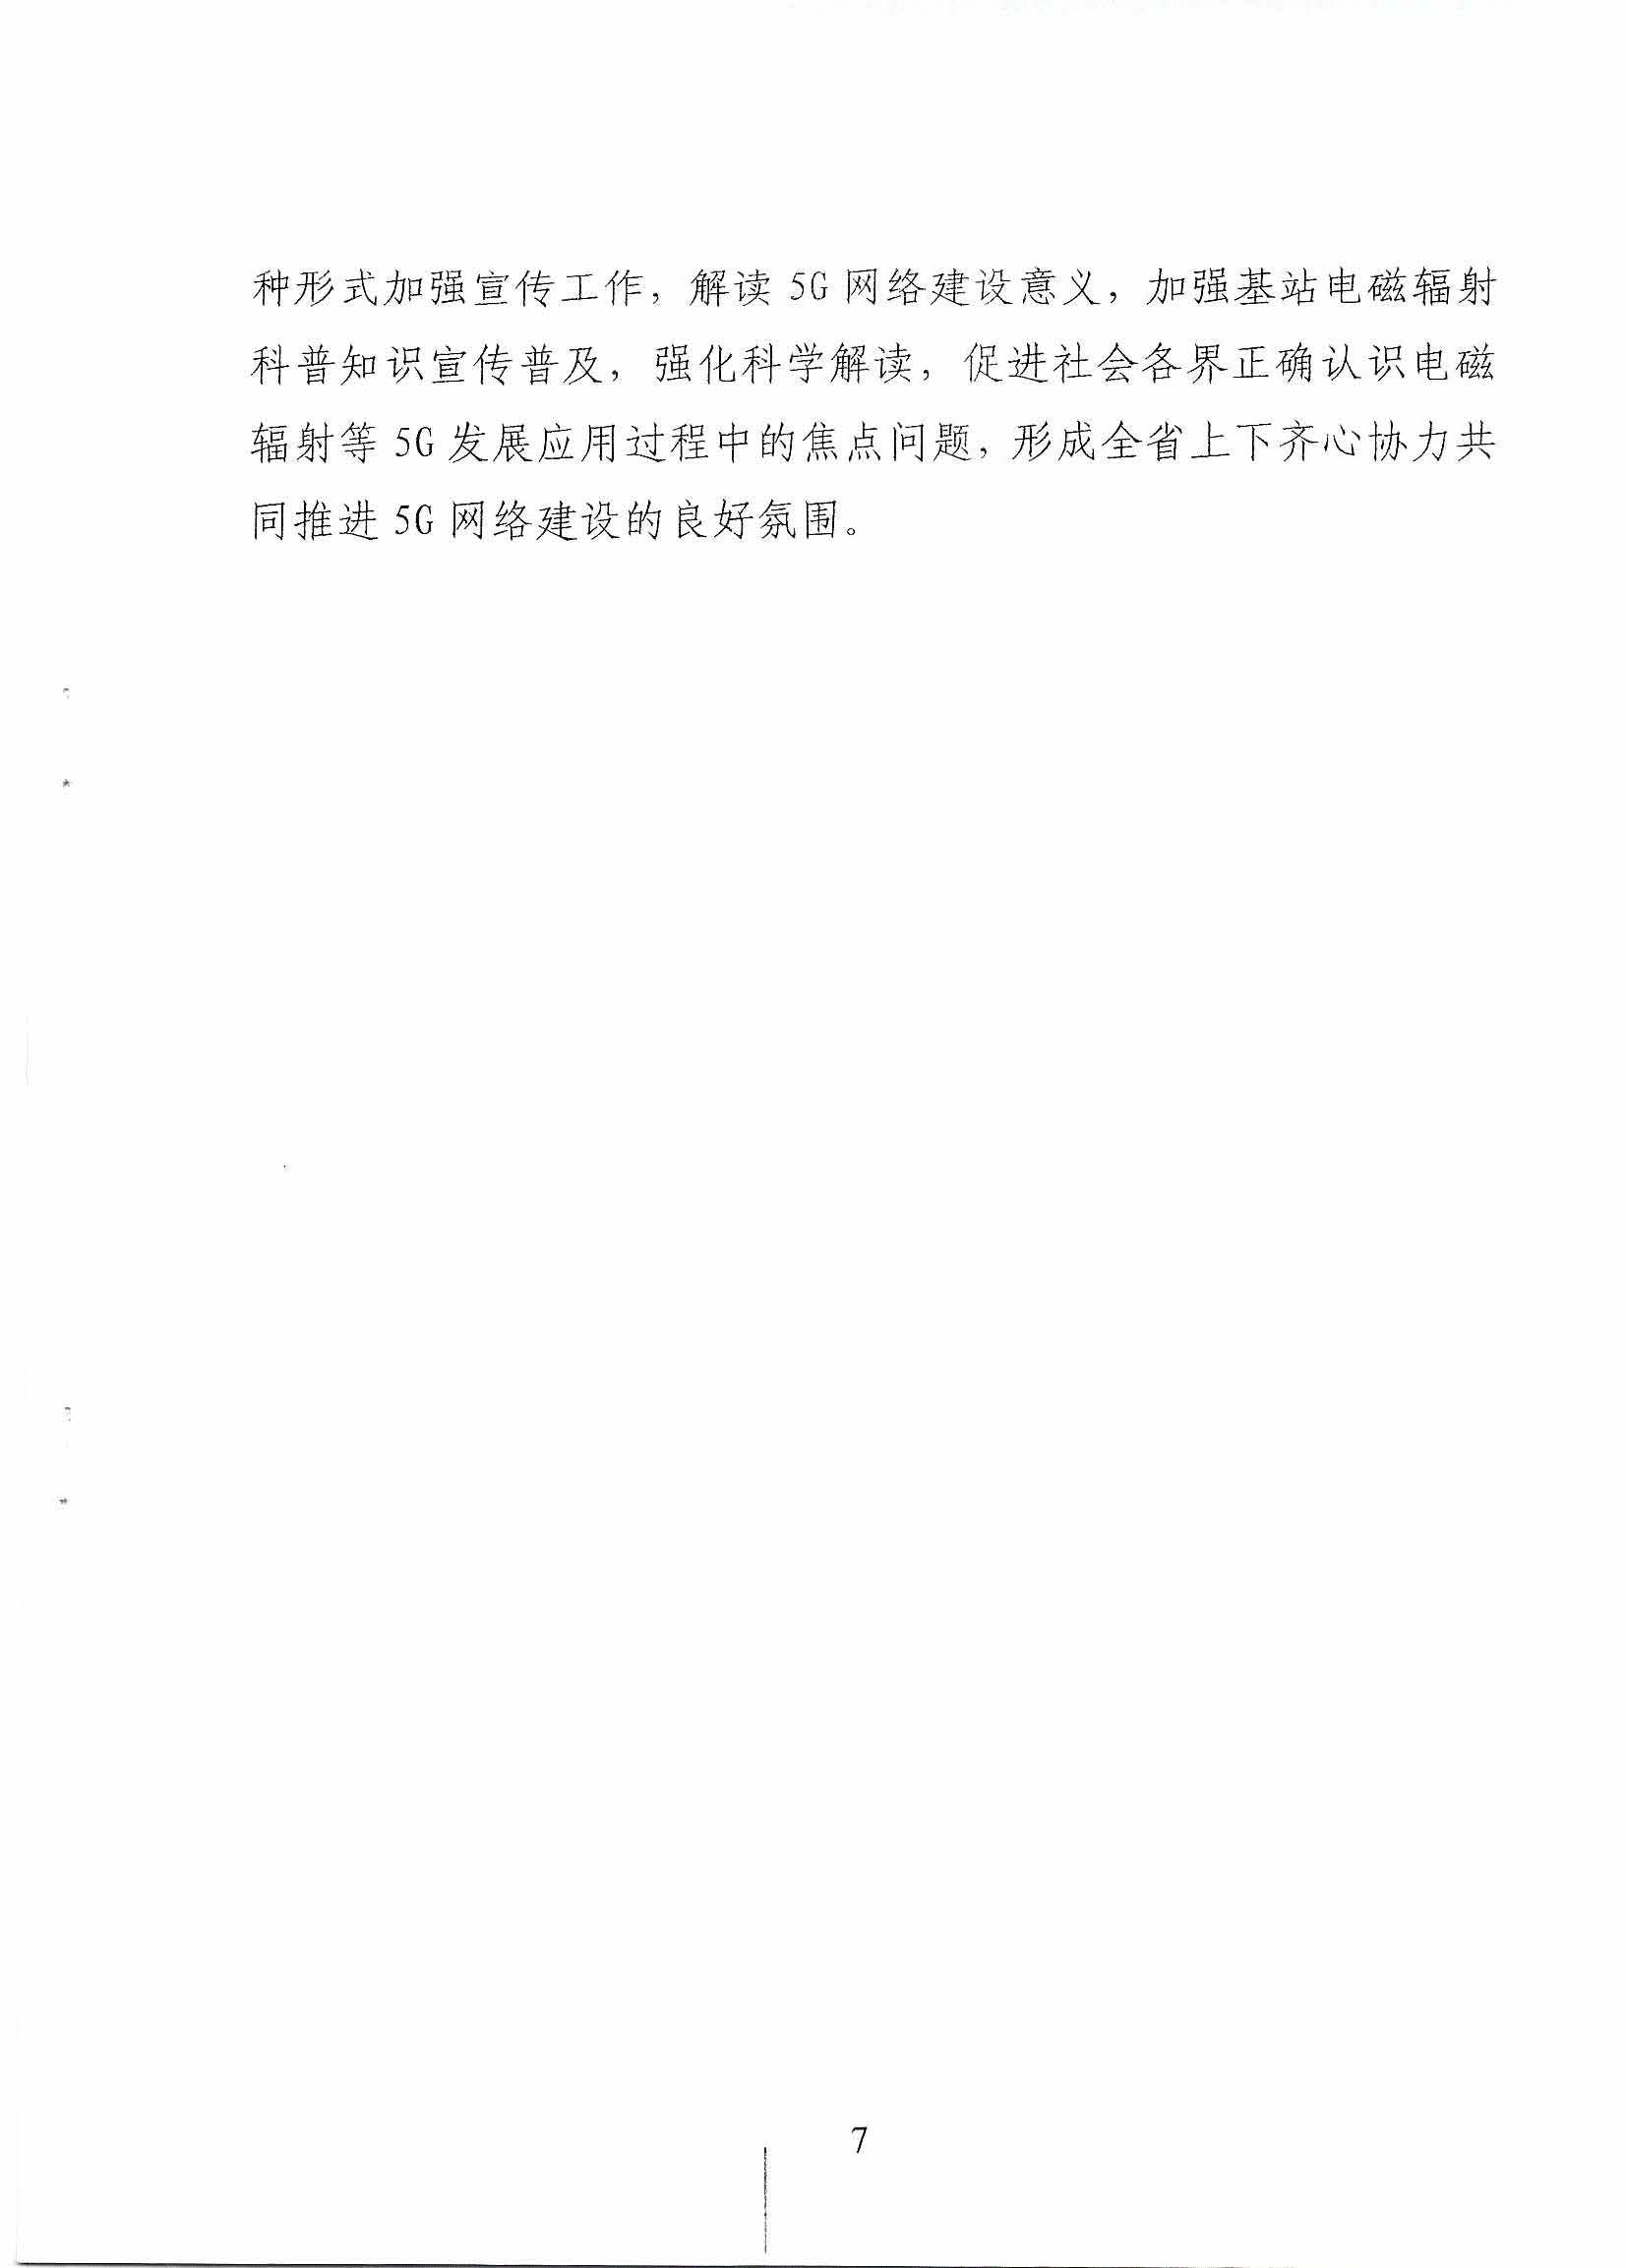 省人民政府办公厅关于印发 贵州省推进5G通信网络建设实施方案的通知(1)_页面_7.jpg